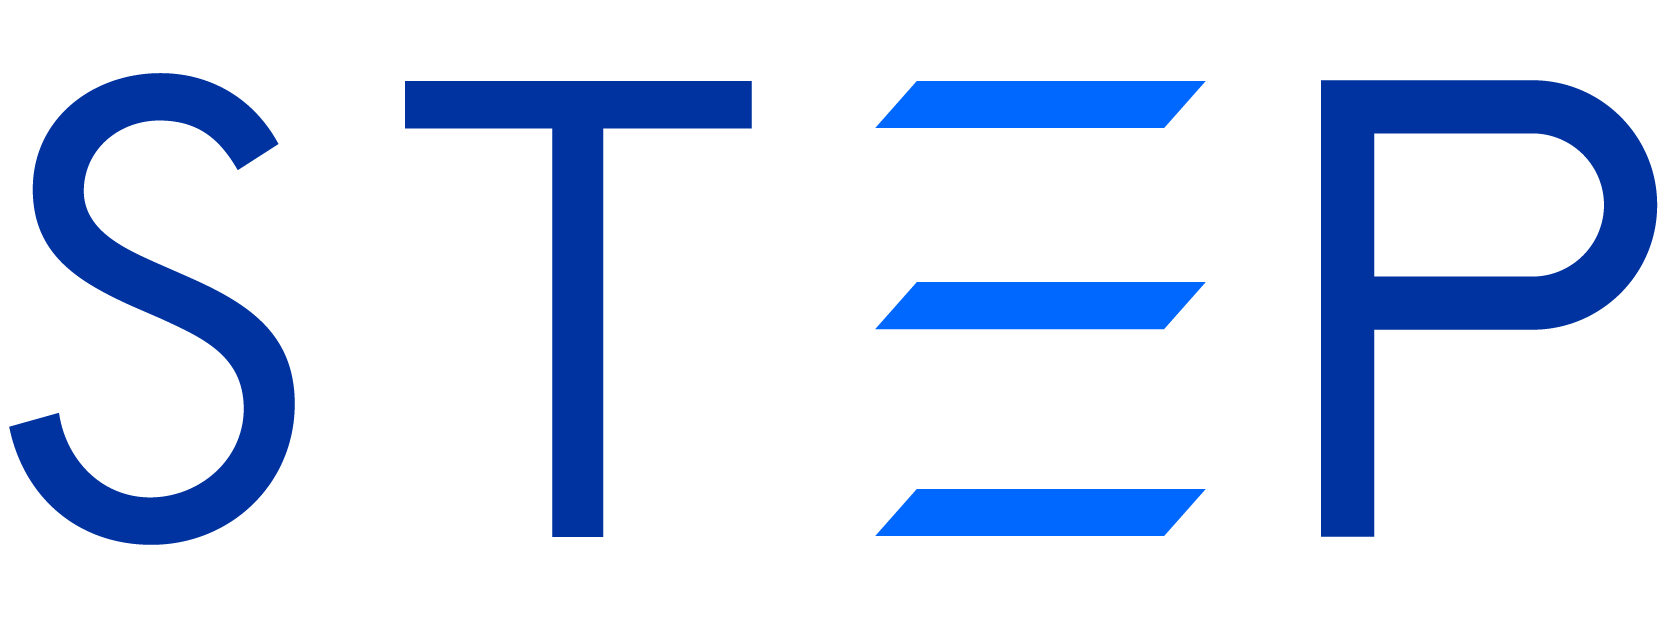 STEP CG logo